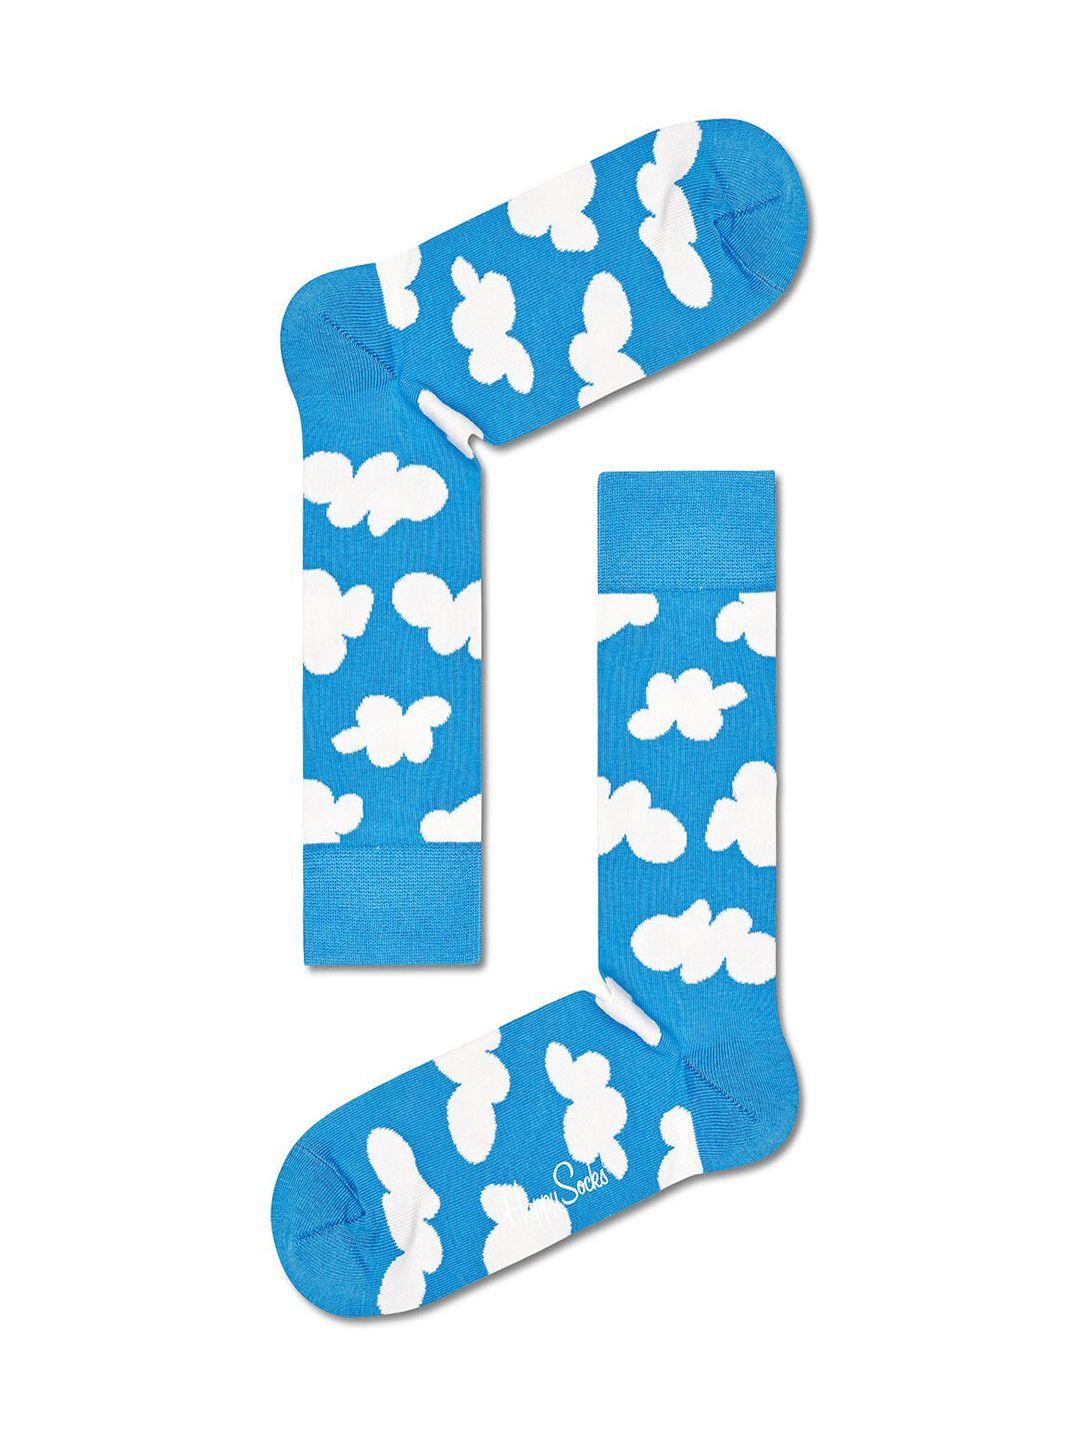 happy socks unisex blue & white patterned cotton calf length socks